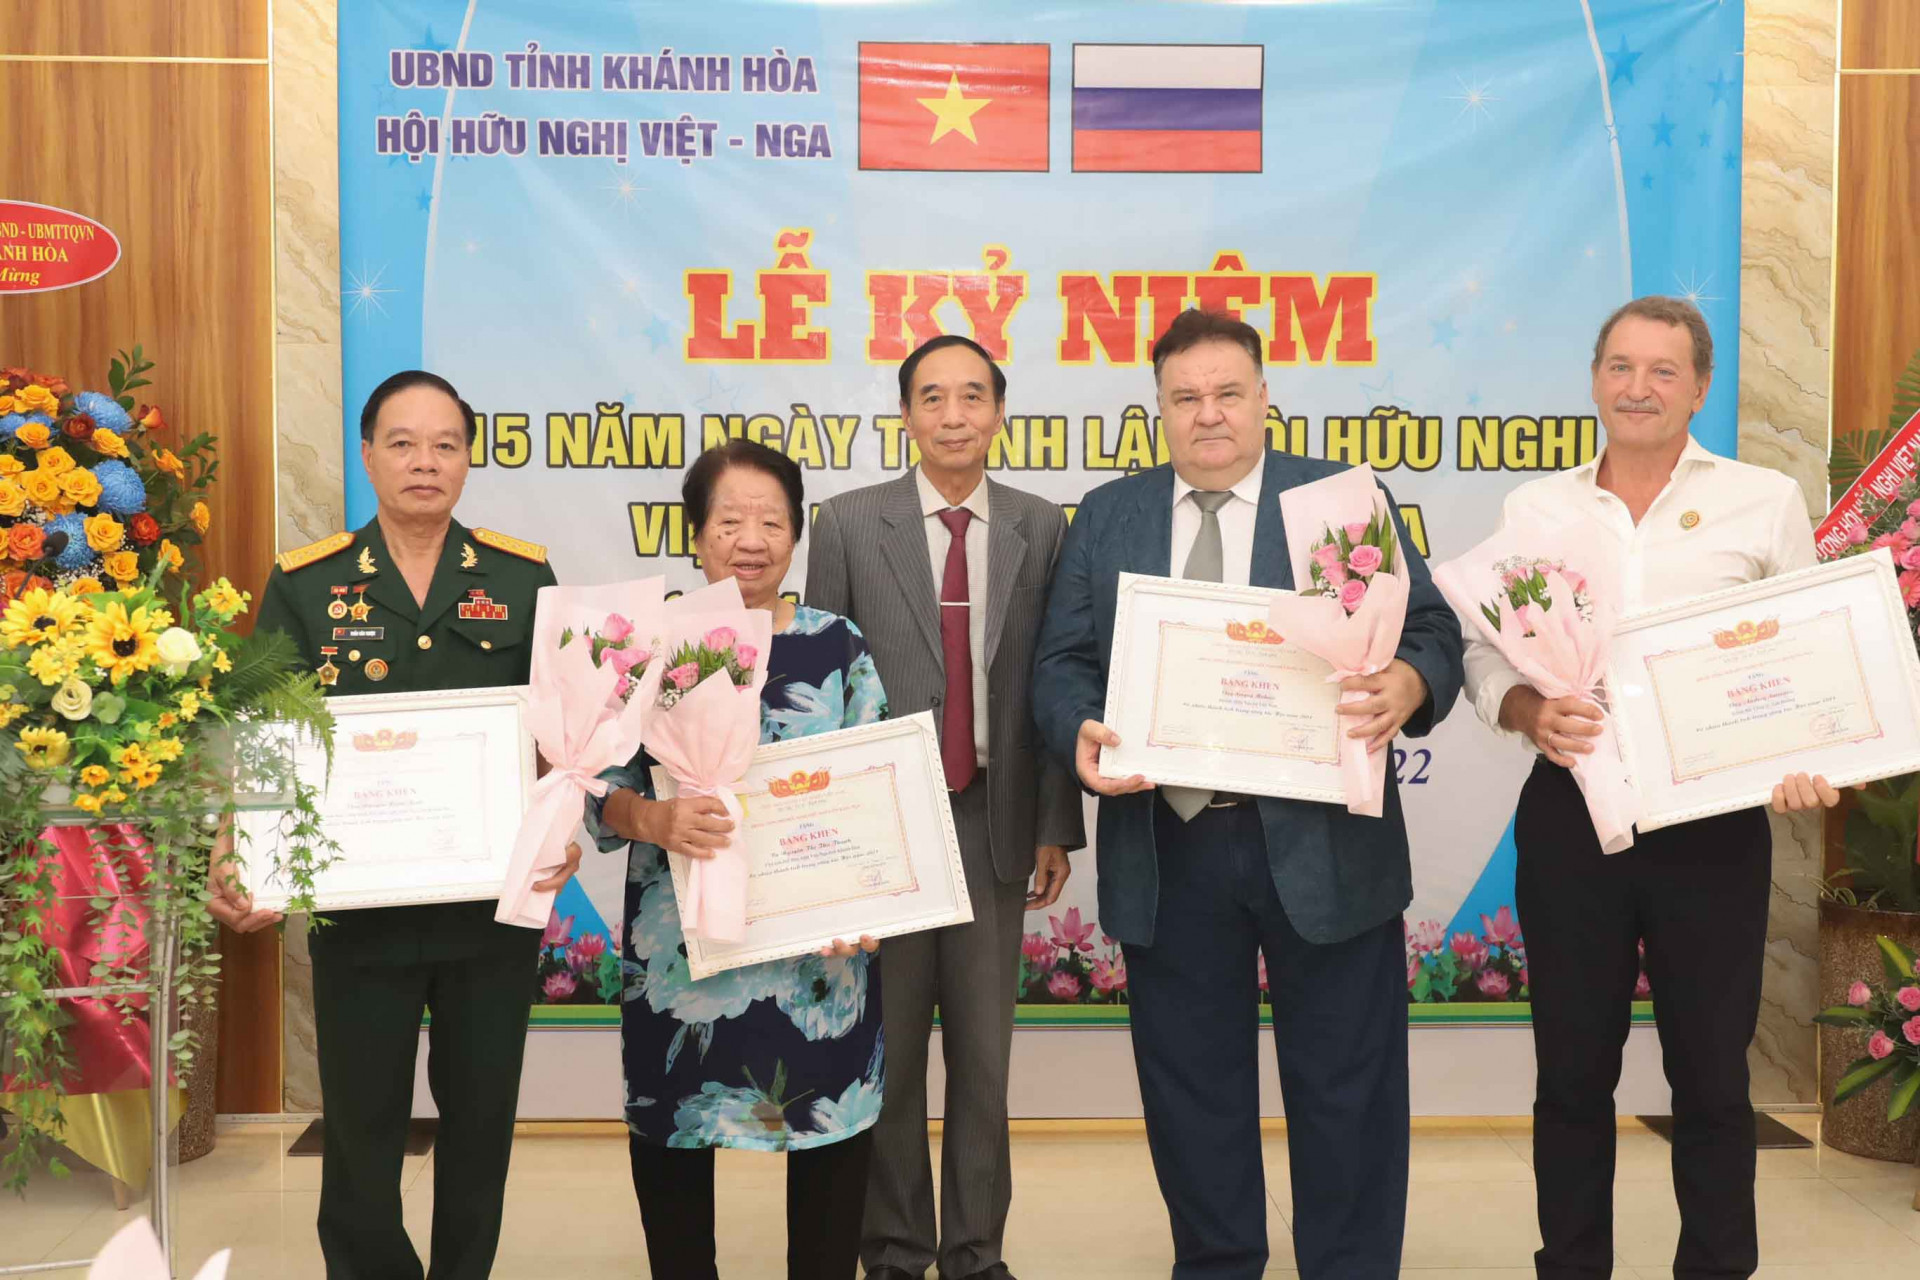 Đại diện lãnh đạo Trung ương Hội hữu nghị Việt – Nga (giữa) trao bằng khen cho các cá nhân.